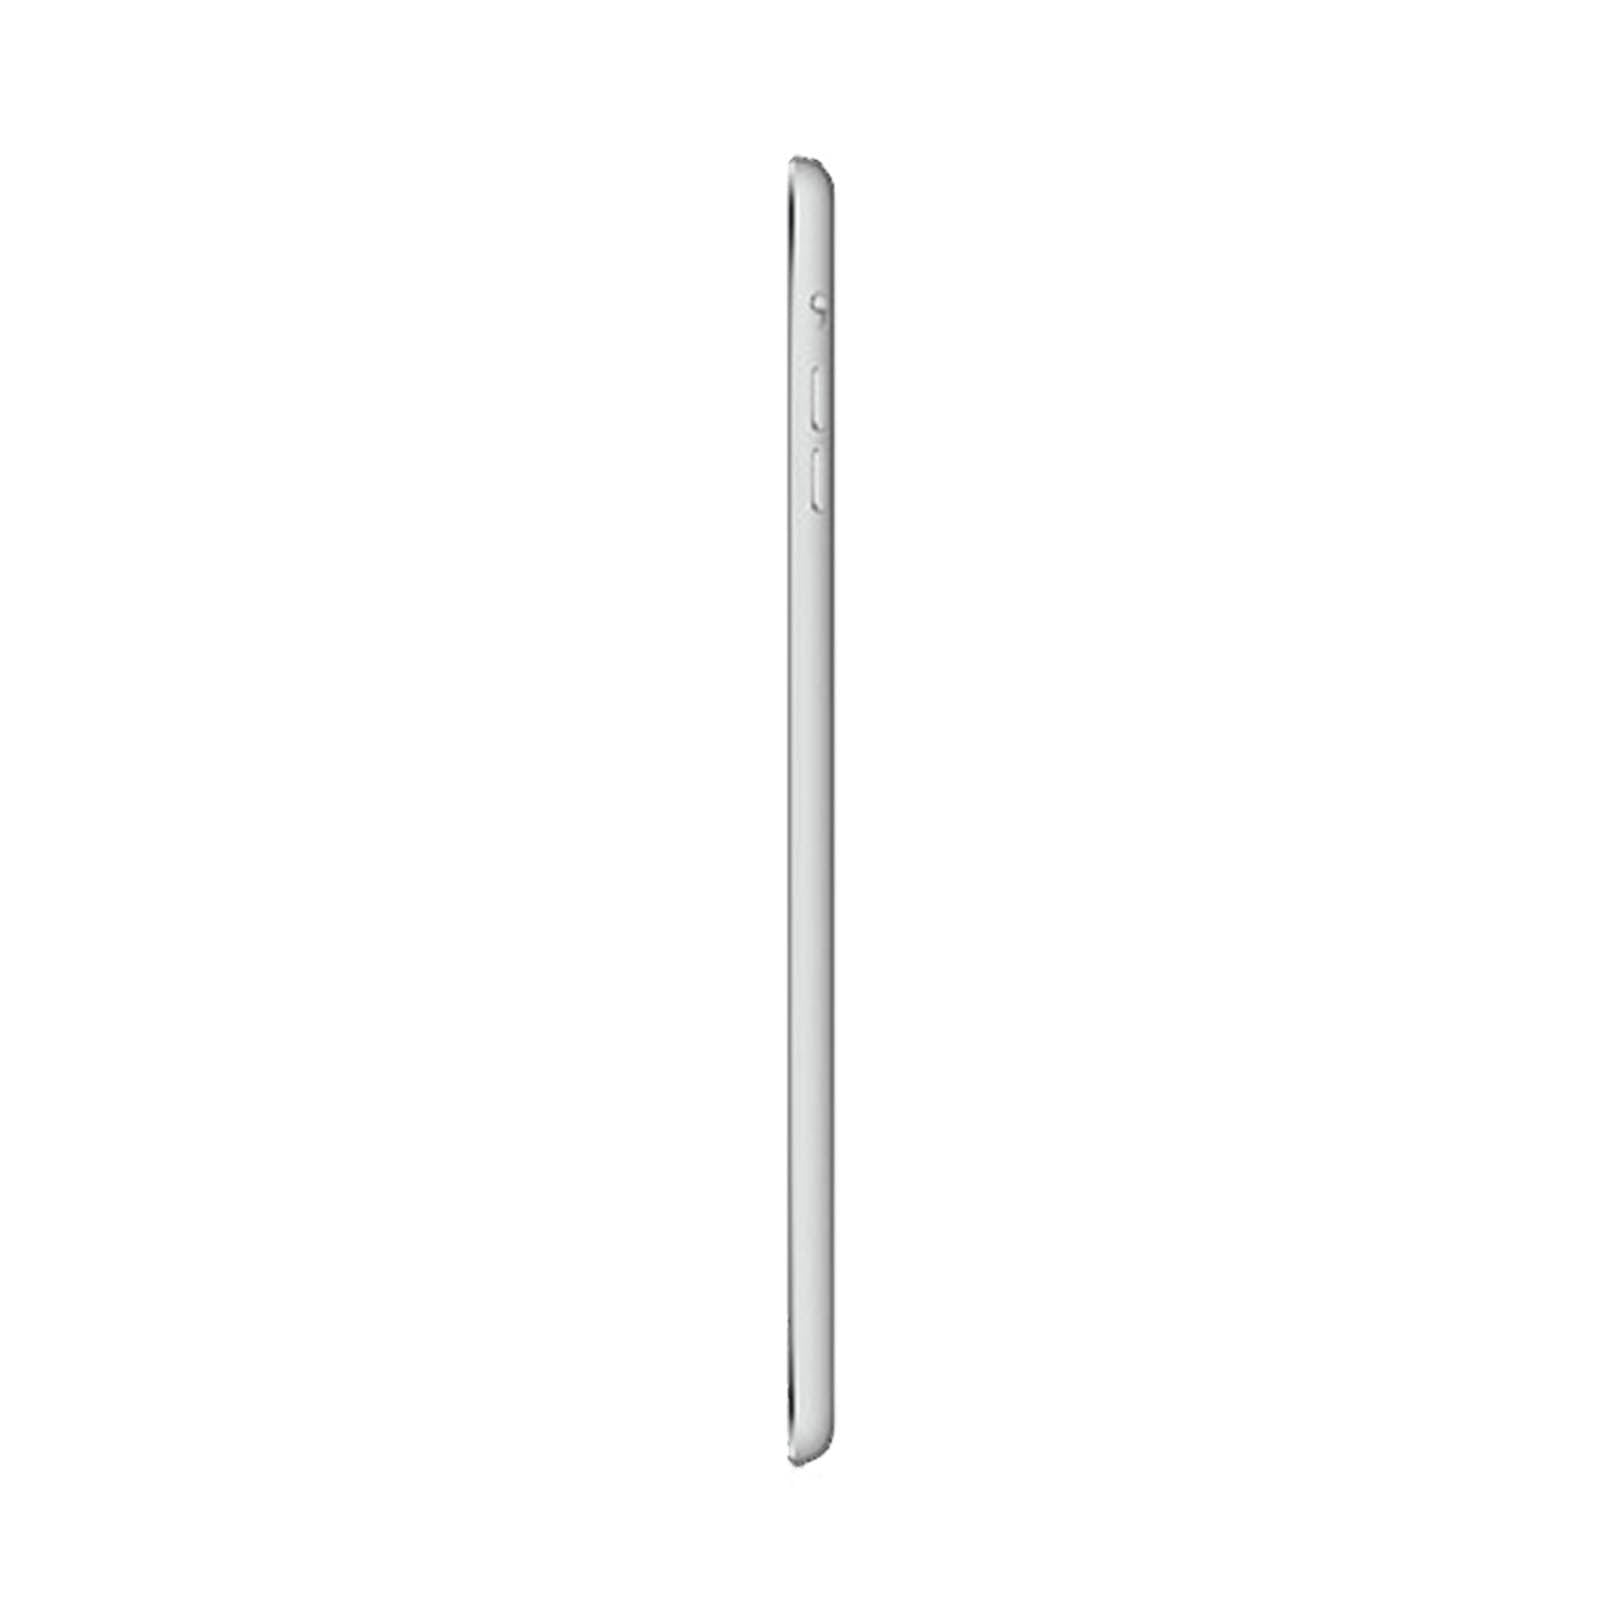 iPad Mini 2 16GB WiFi -Silver -Very Good